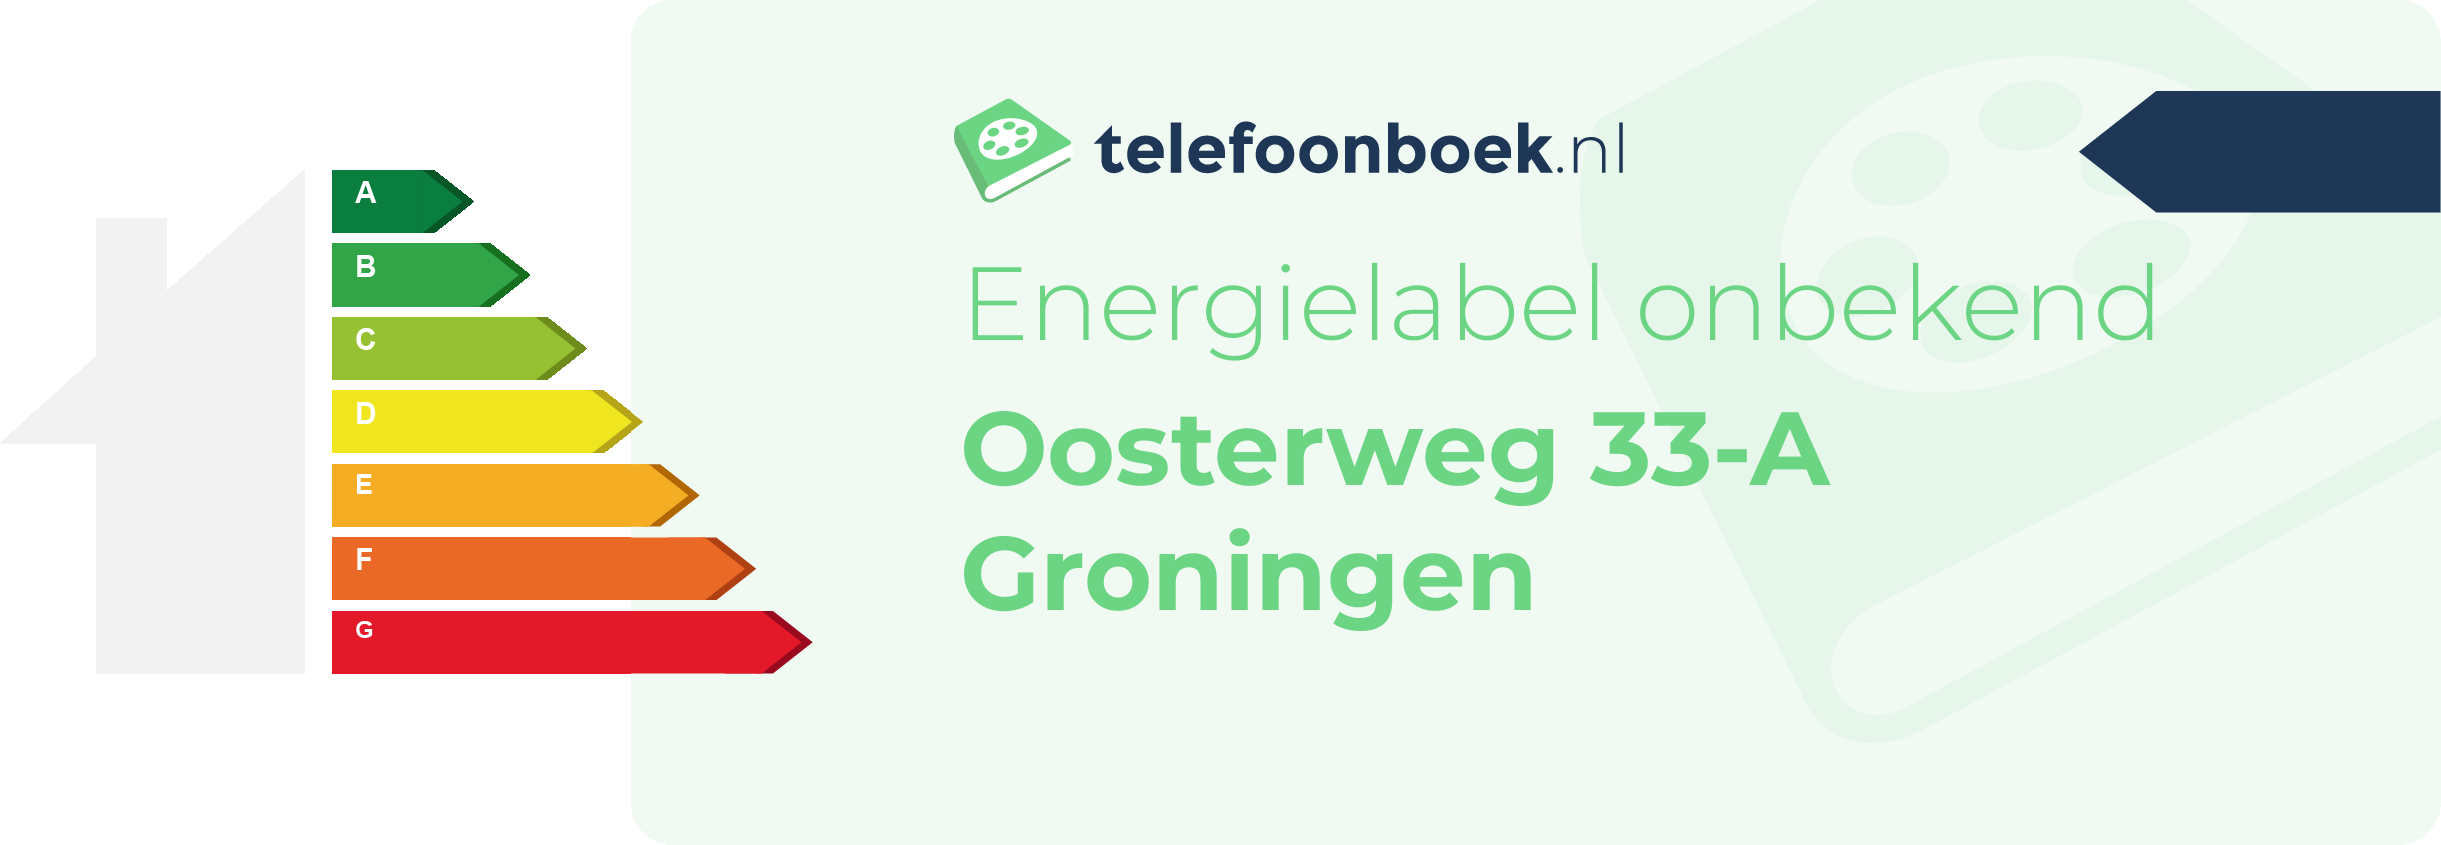 Energielabel Oosterweg 33-A Groningen